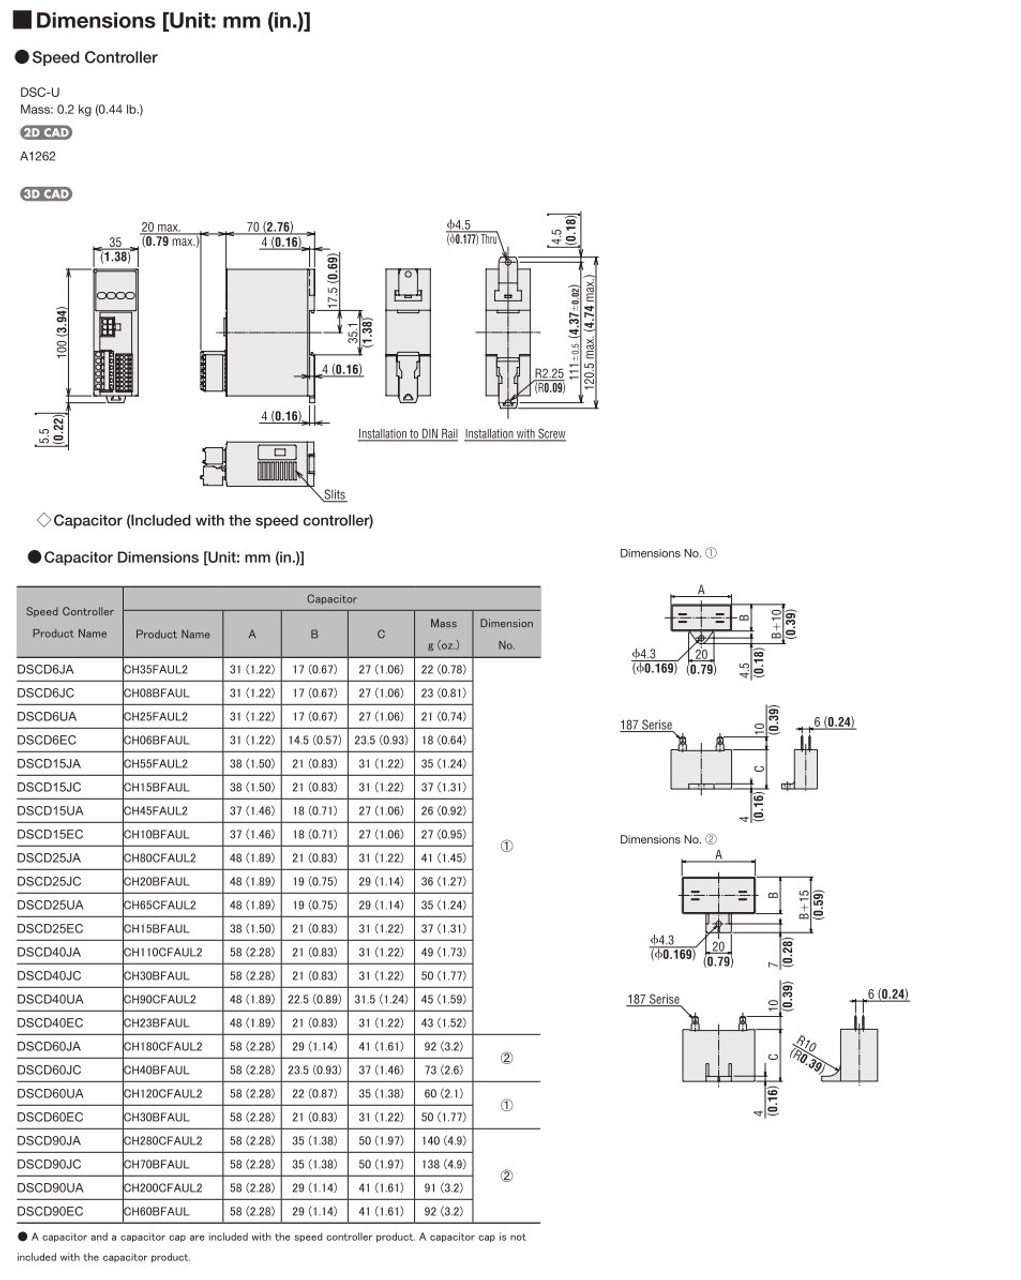 SCM315EC-18A / DSCD15EC - Dimensions